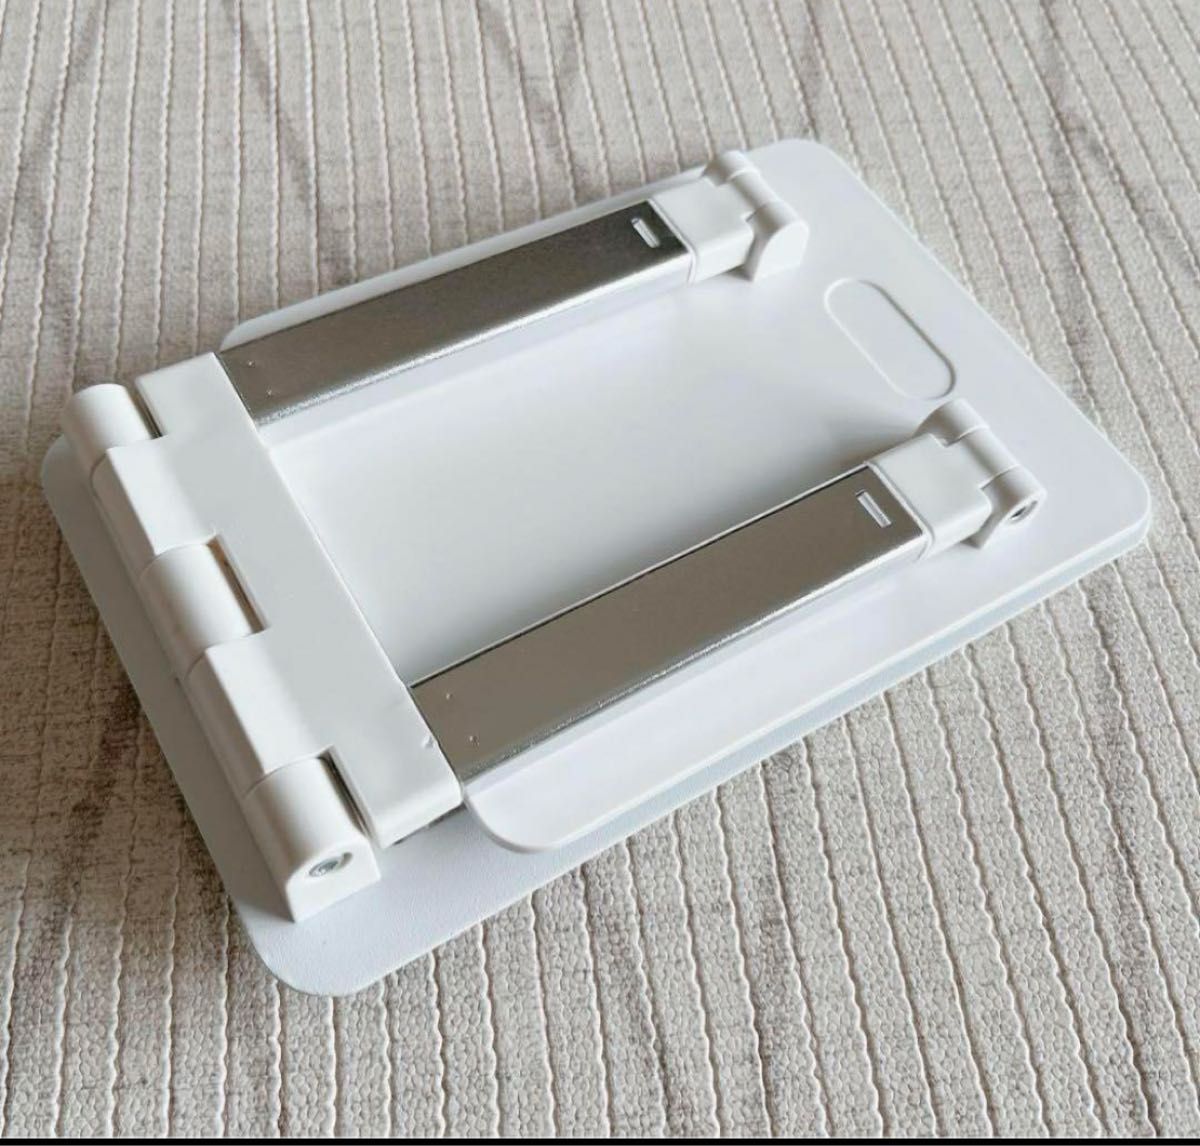 タブレットスタンド 折り畳み式 iPadタブレットスタンド 高さと角度が調節可能 角度調整 iPadスタンド テレワーク